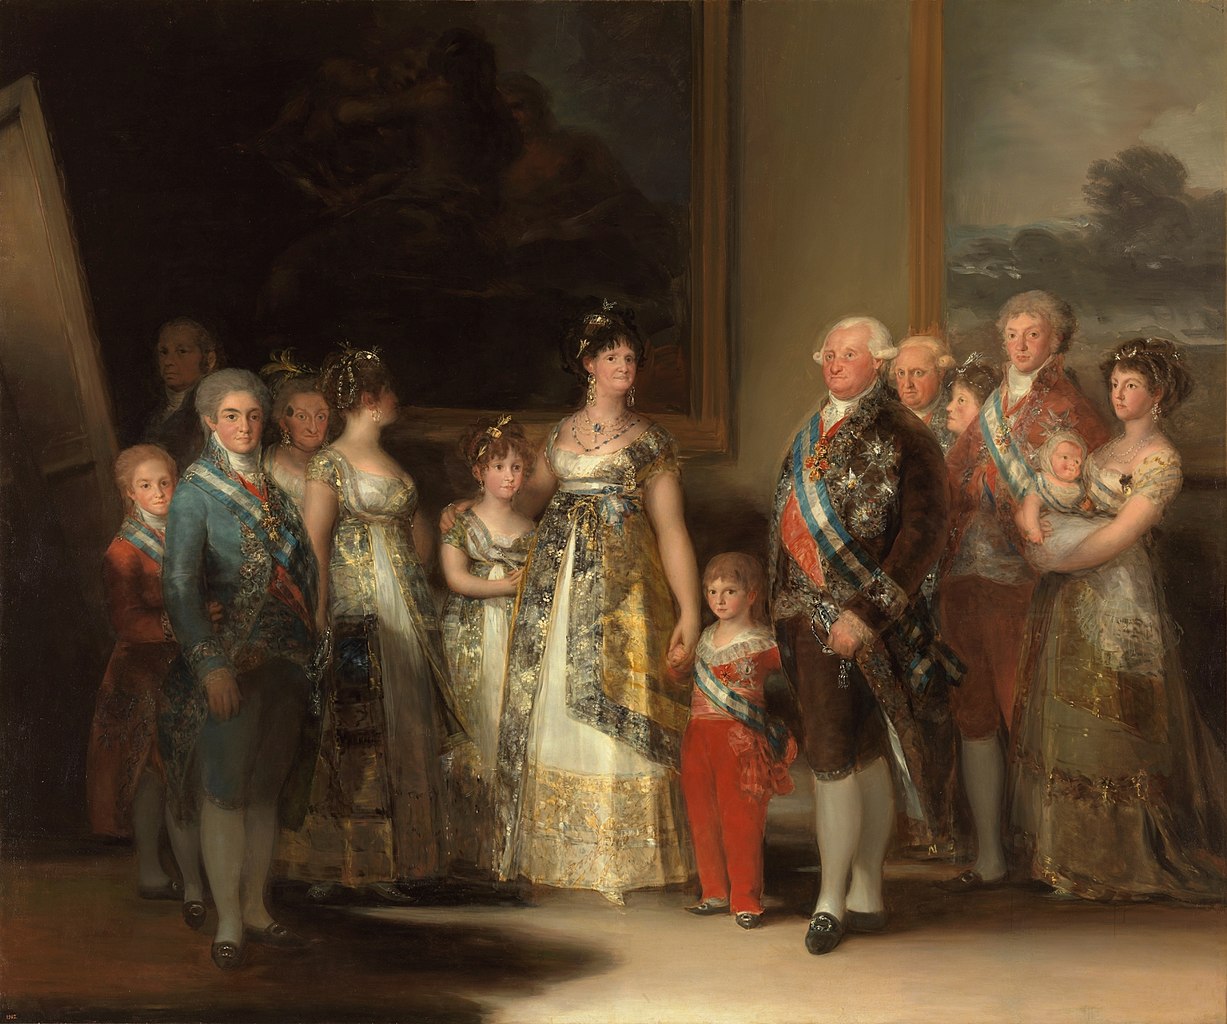 Franciesco de Goya y Lucientes, Ritratto della Famiglia di Carlo IV (1800-1801; olio su tela, 280 x 336 cm; Madrid, Prado). Maria Giuseppina di Borbone è la quarta da sinistra 